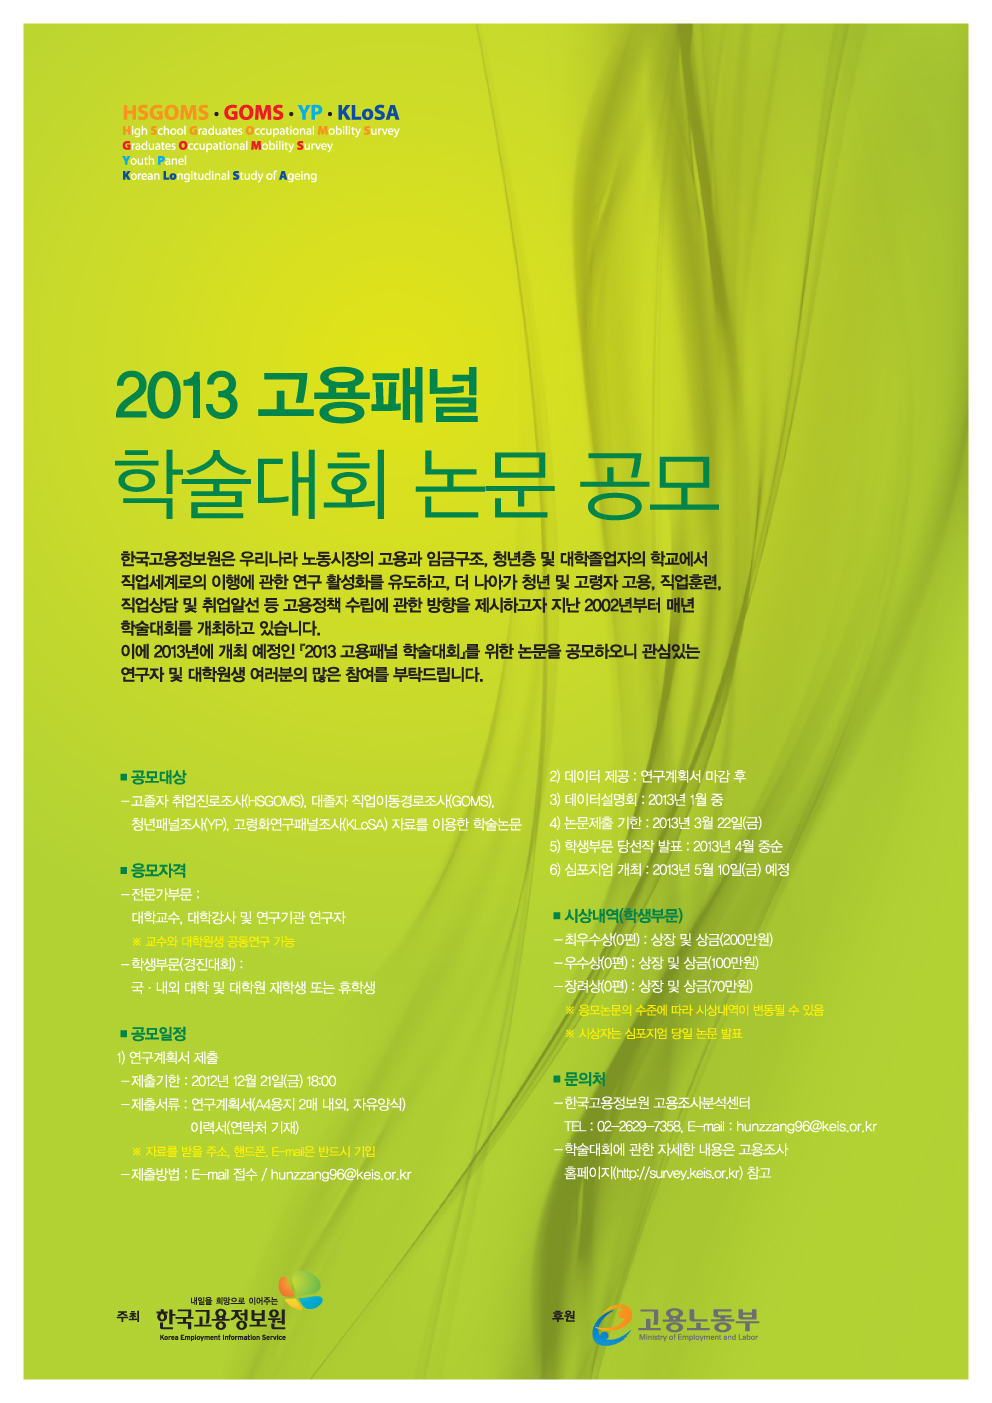 2013 고용패널 학술대회 논문공모